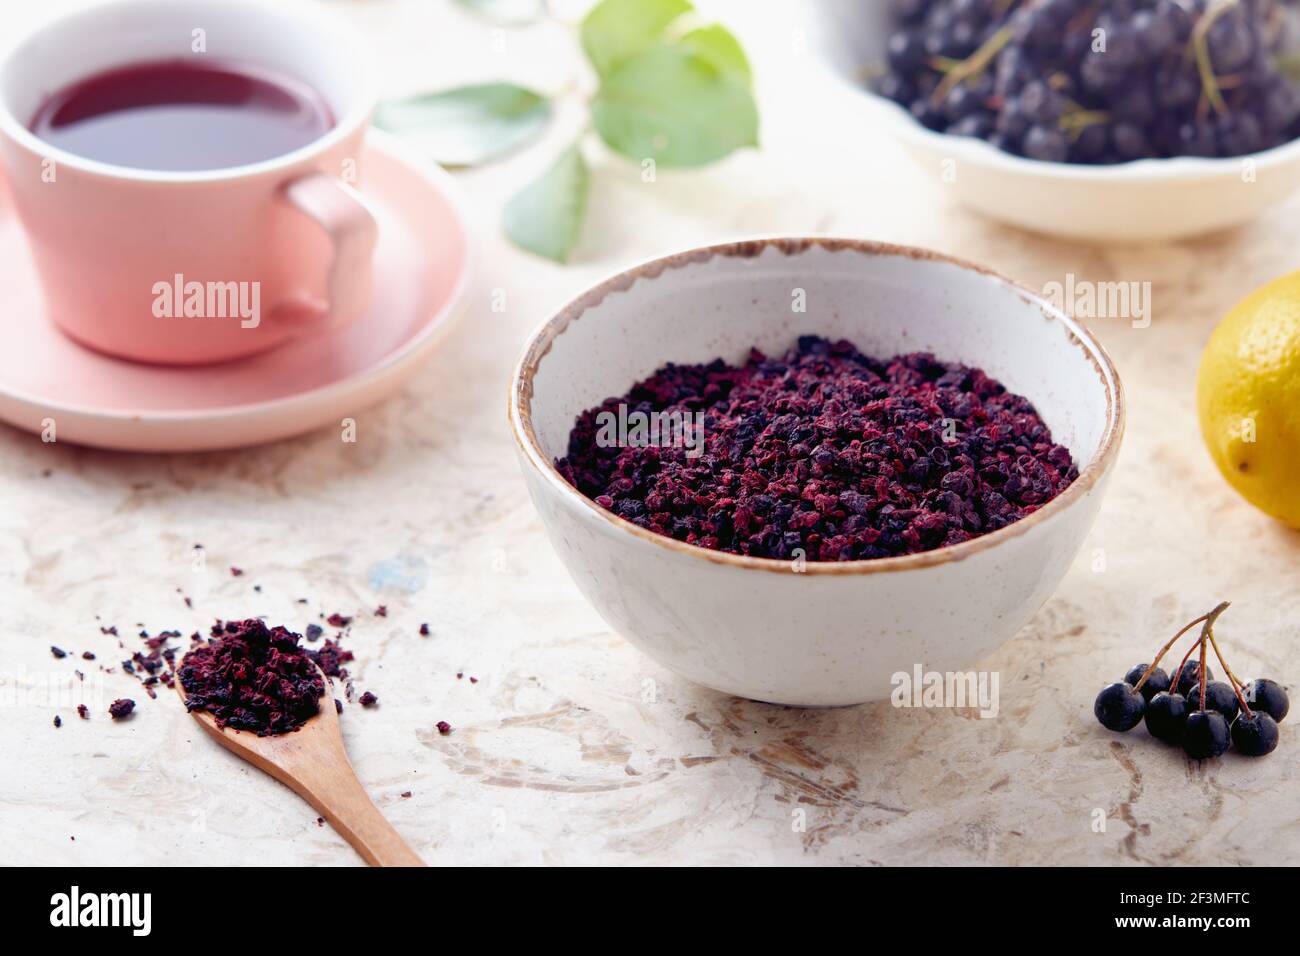 Tè alle bacche di Aronia. Le bacche aroniche secche sono comunemente usate per fare il tè alle erbe ricco di antiossidanti. Foto Stock